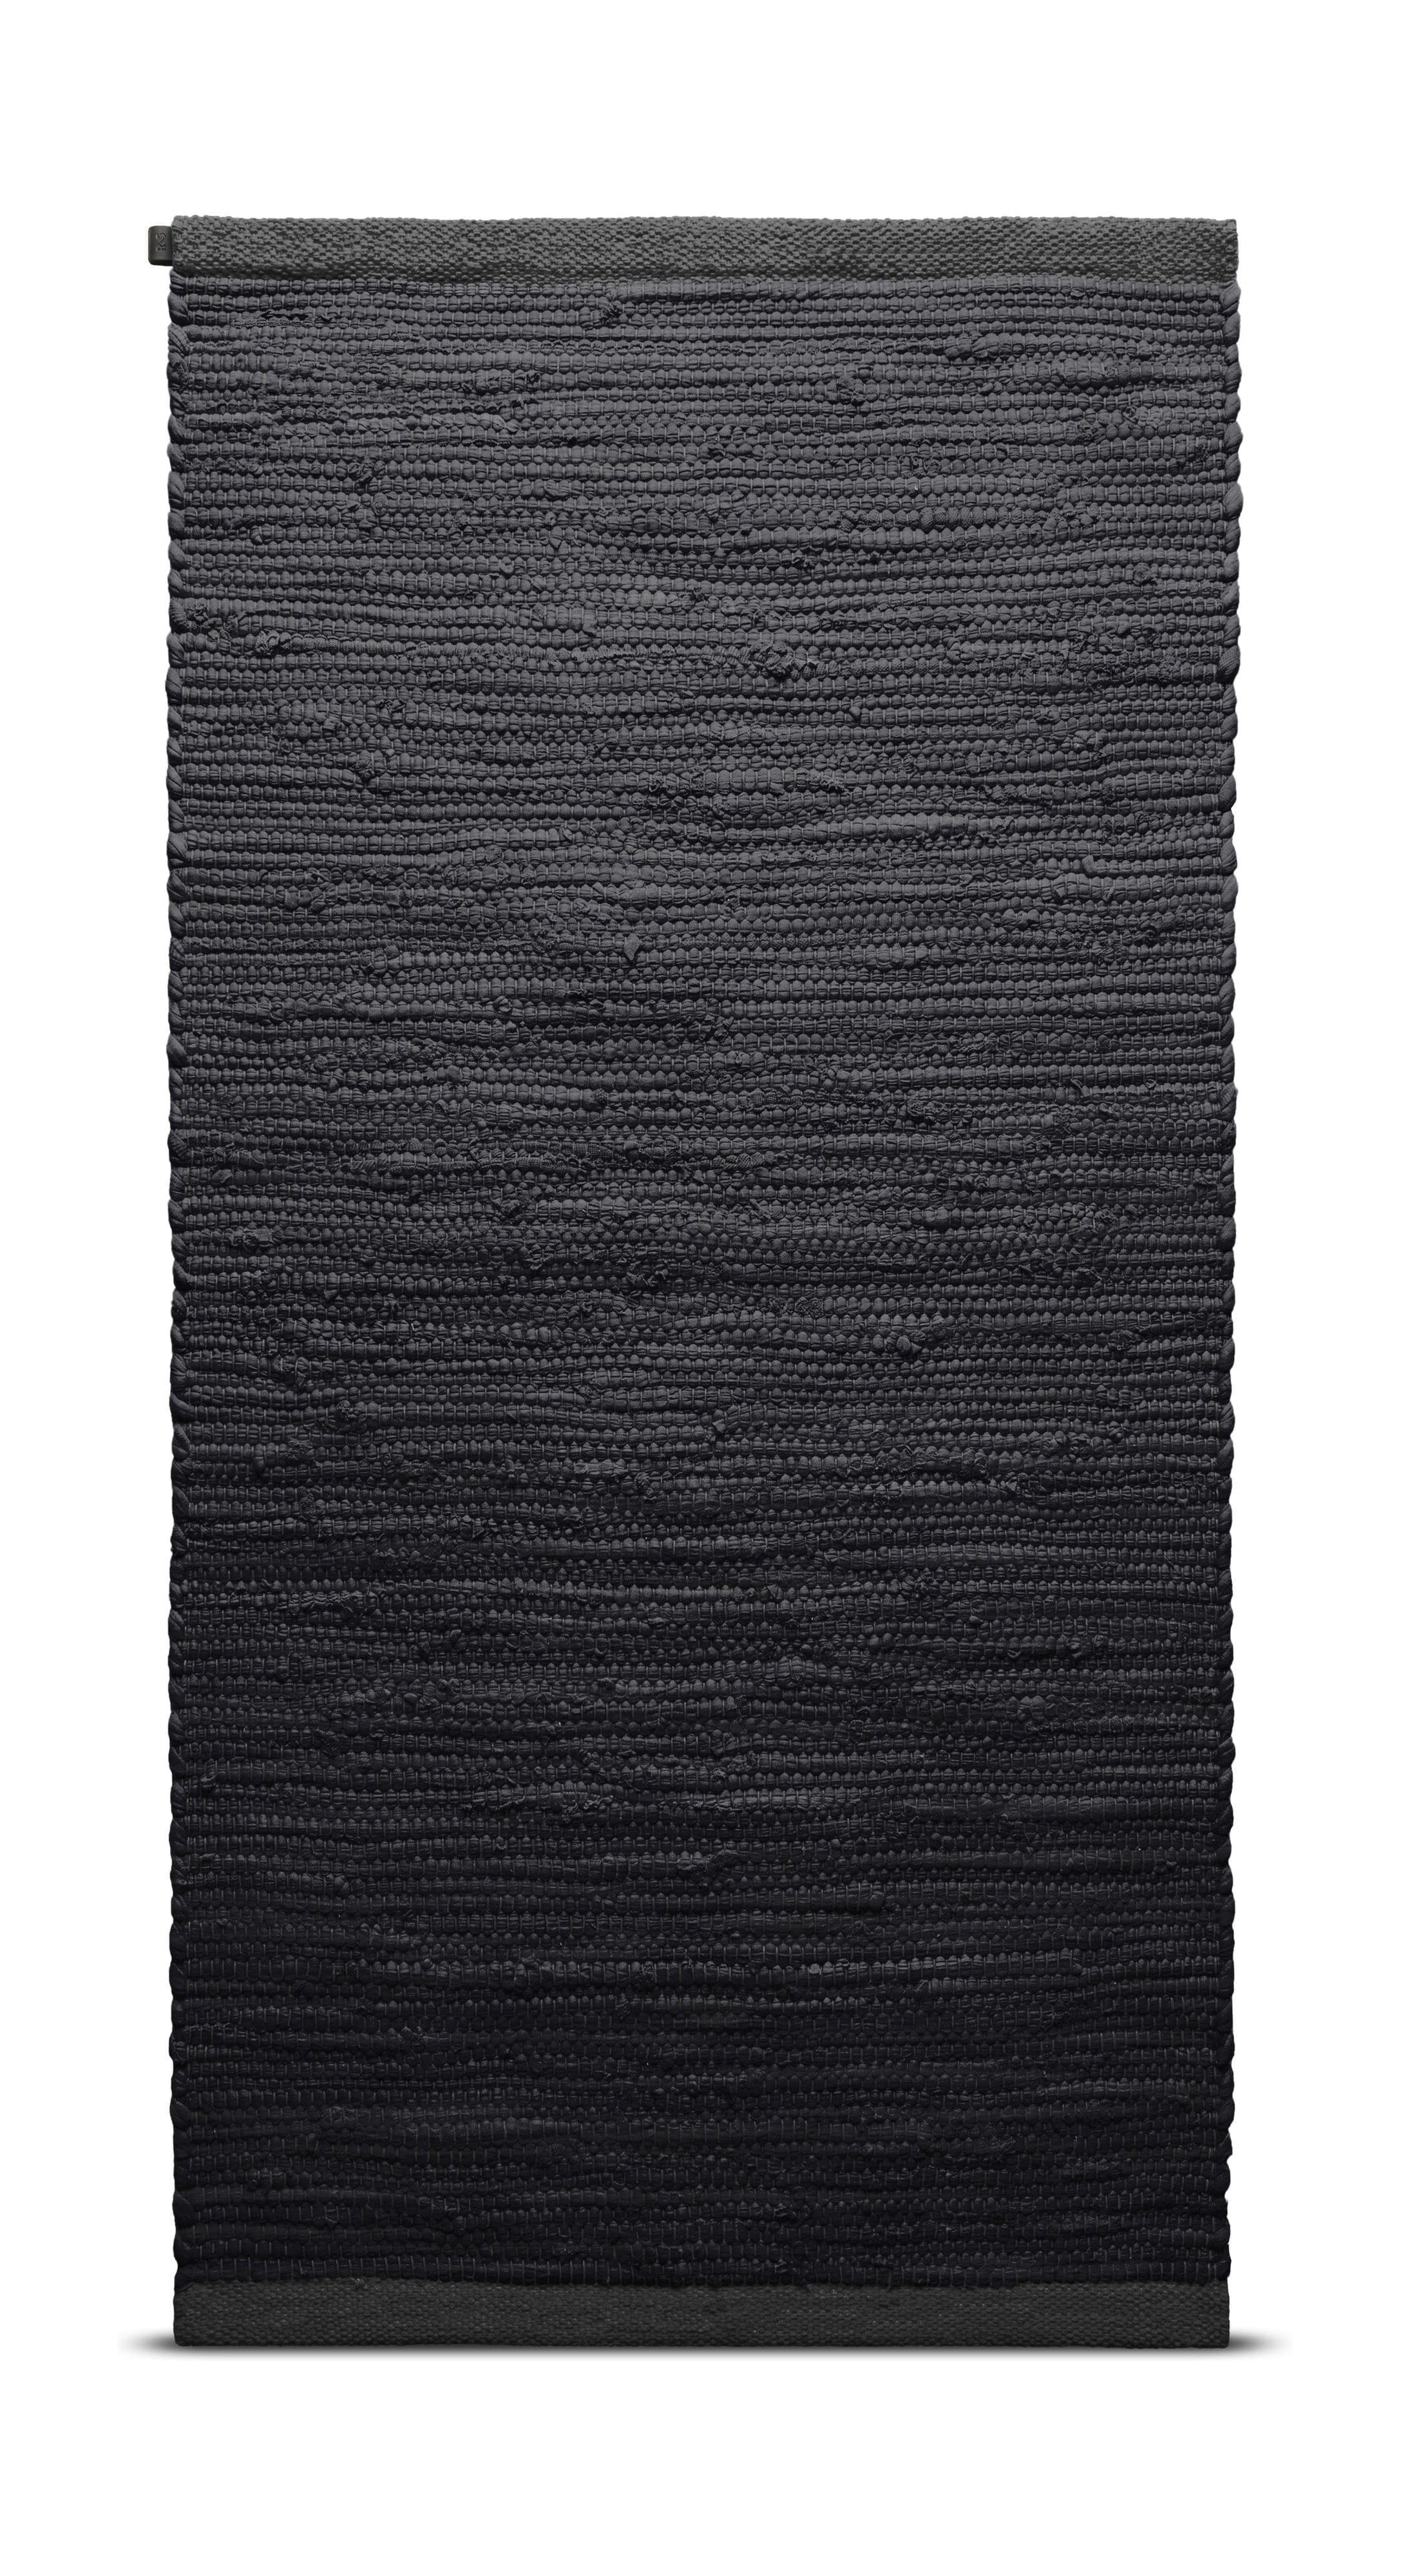 Tappeto in cotone solido 60 x 90 cm, carbone